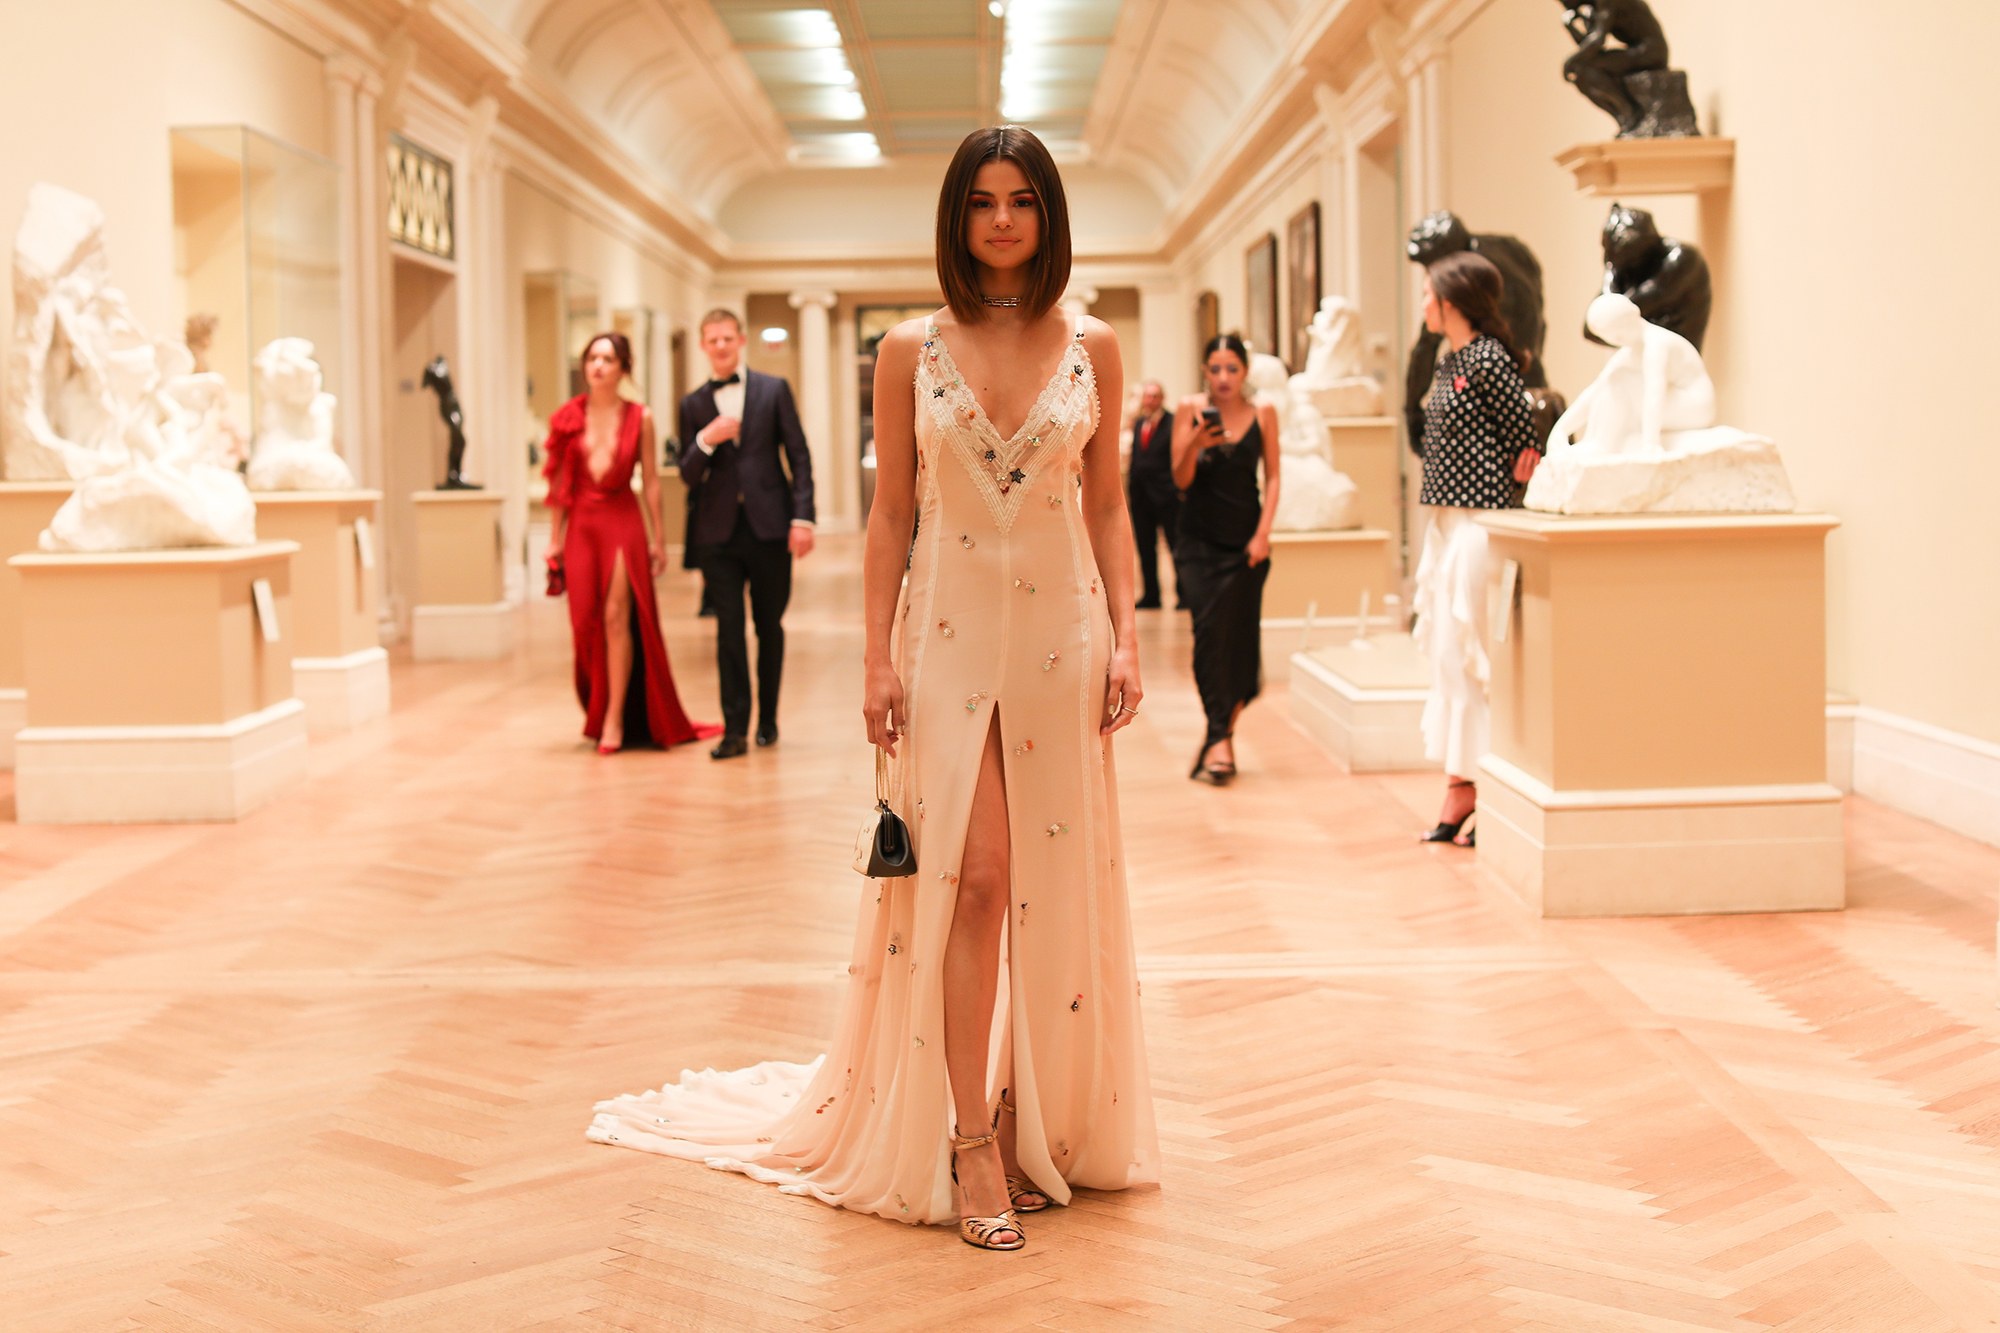 People 2000x1333 women model singer actress Selena Gomez legs heels shoulder length hair standing women indoors American women